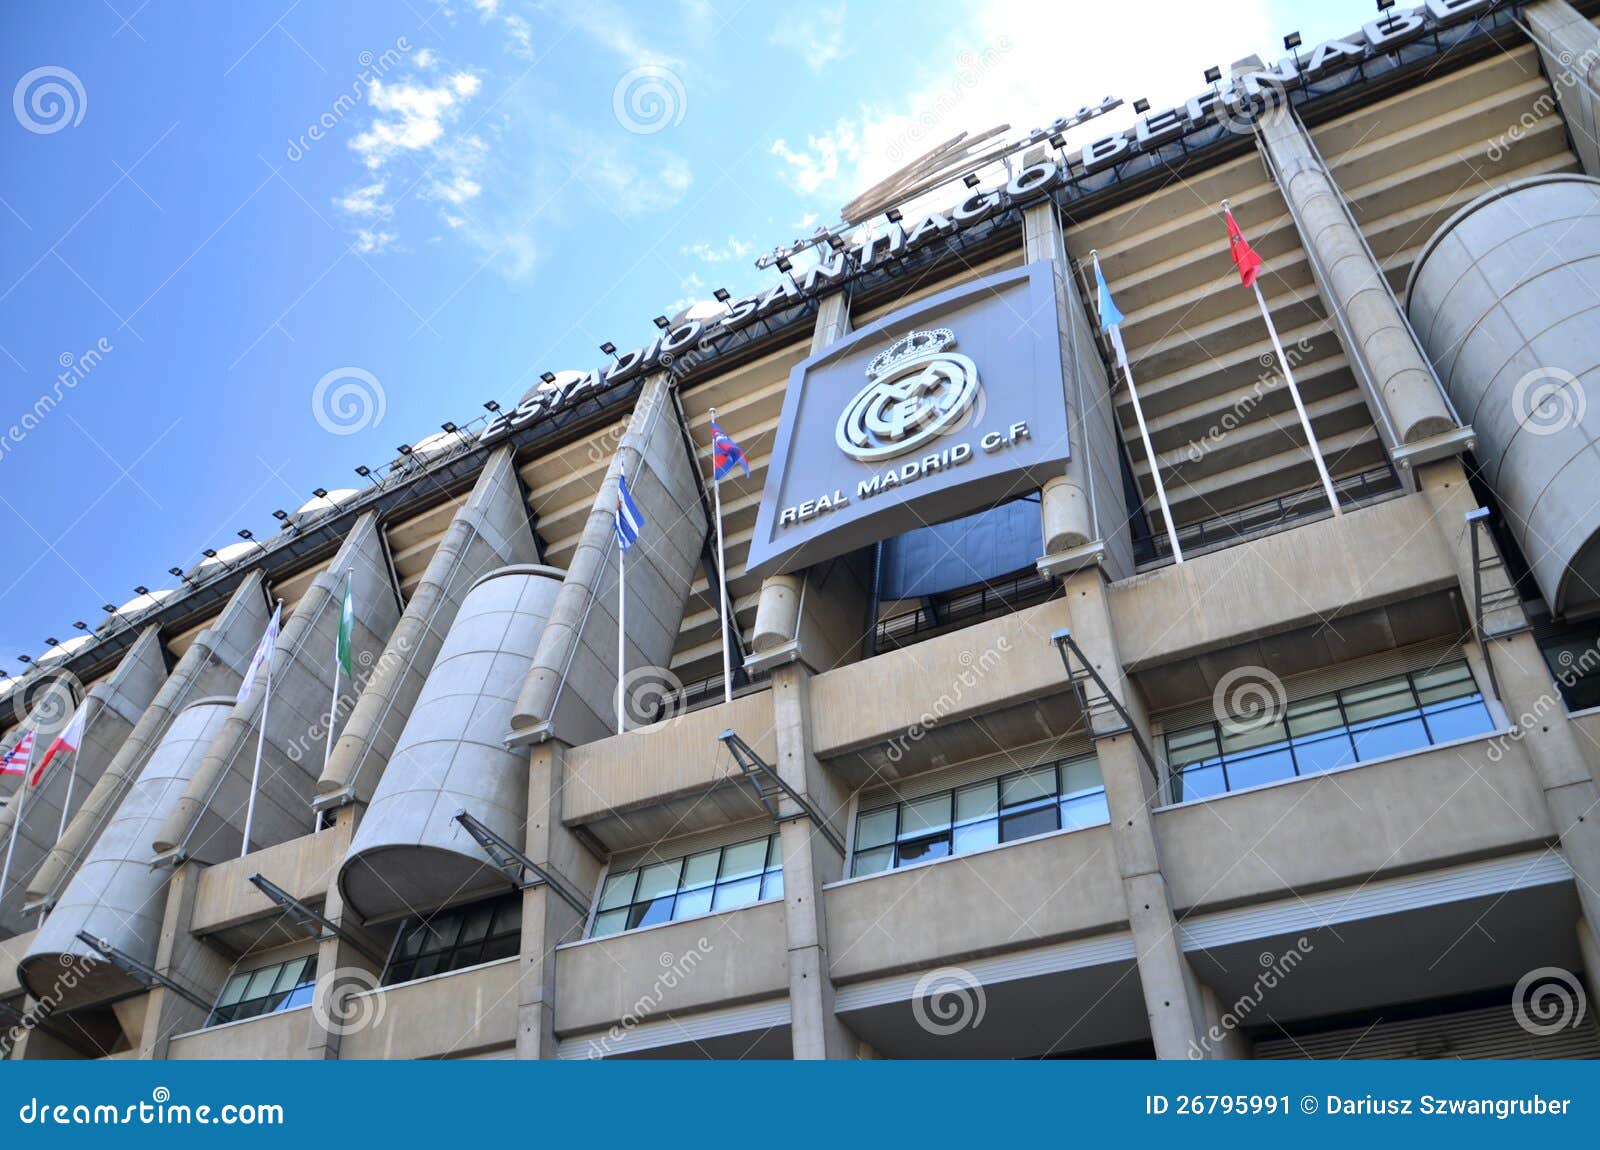 Stadion Santiago Bernabeu Von Real Madrid Redaktionelles Foto